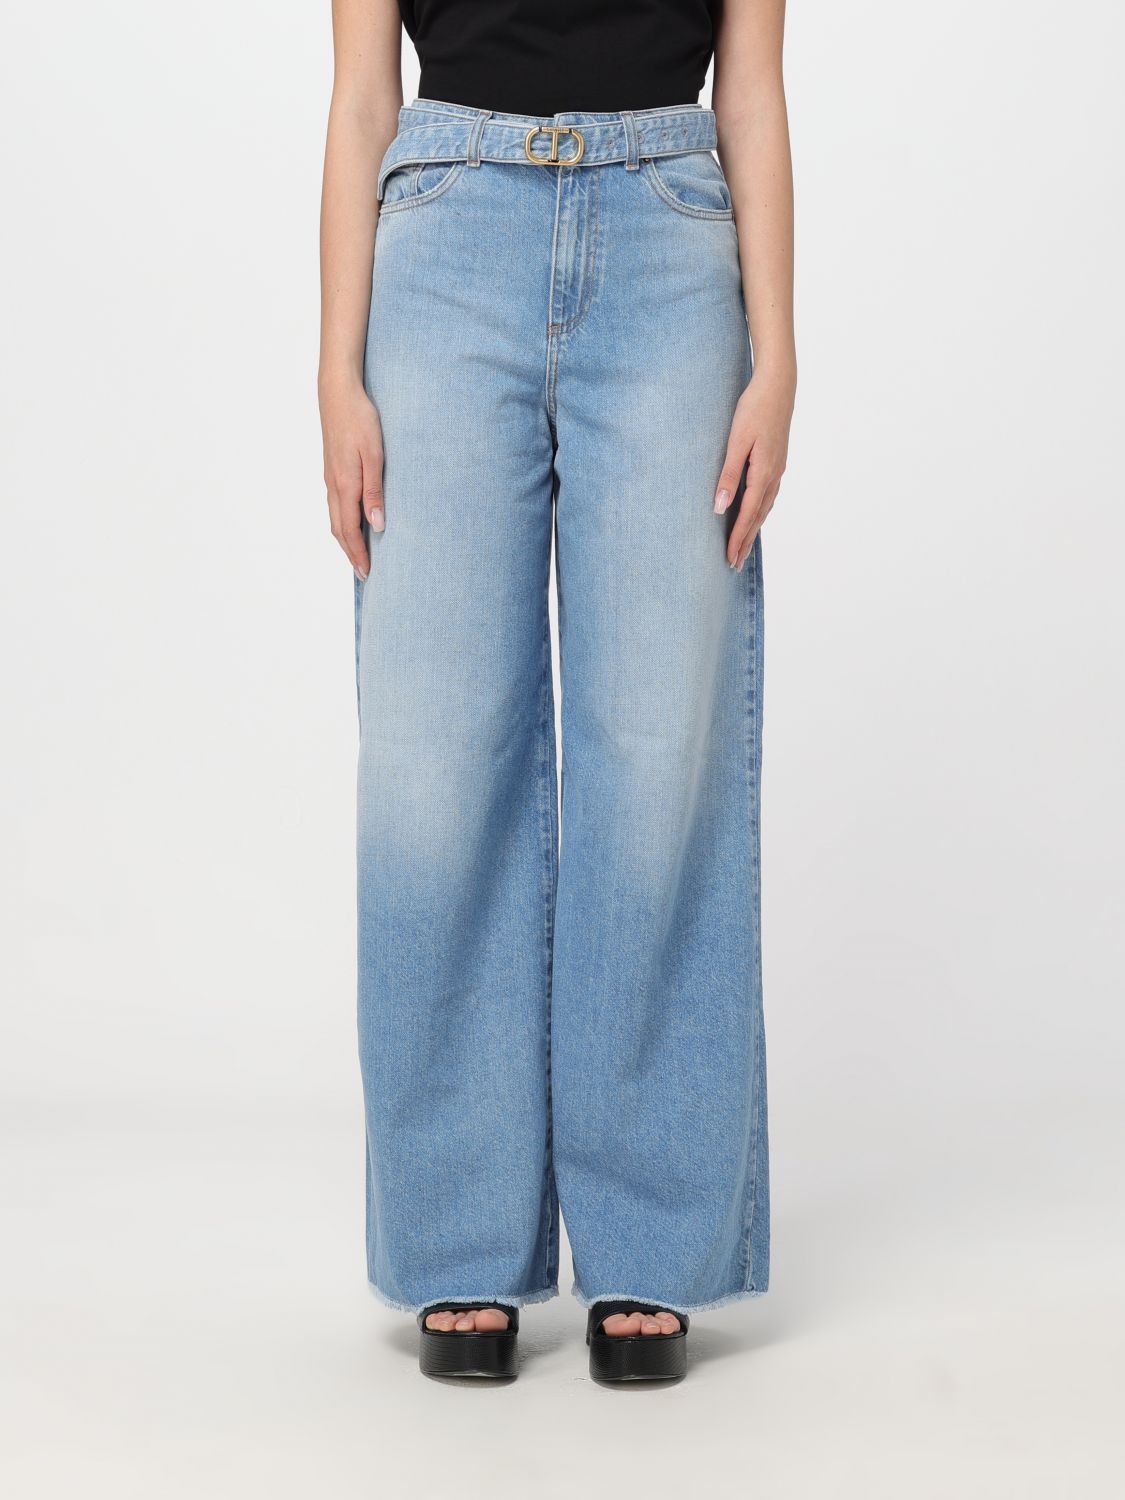 Twinset Jeans TWINSET Woman colour Denim